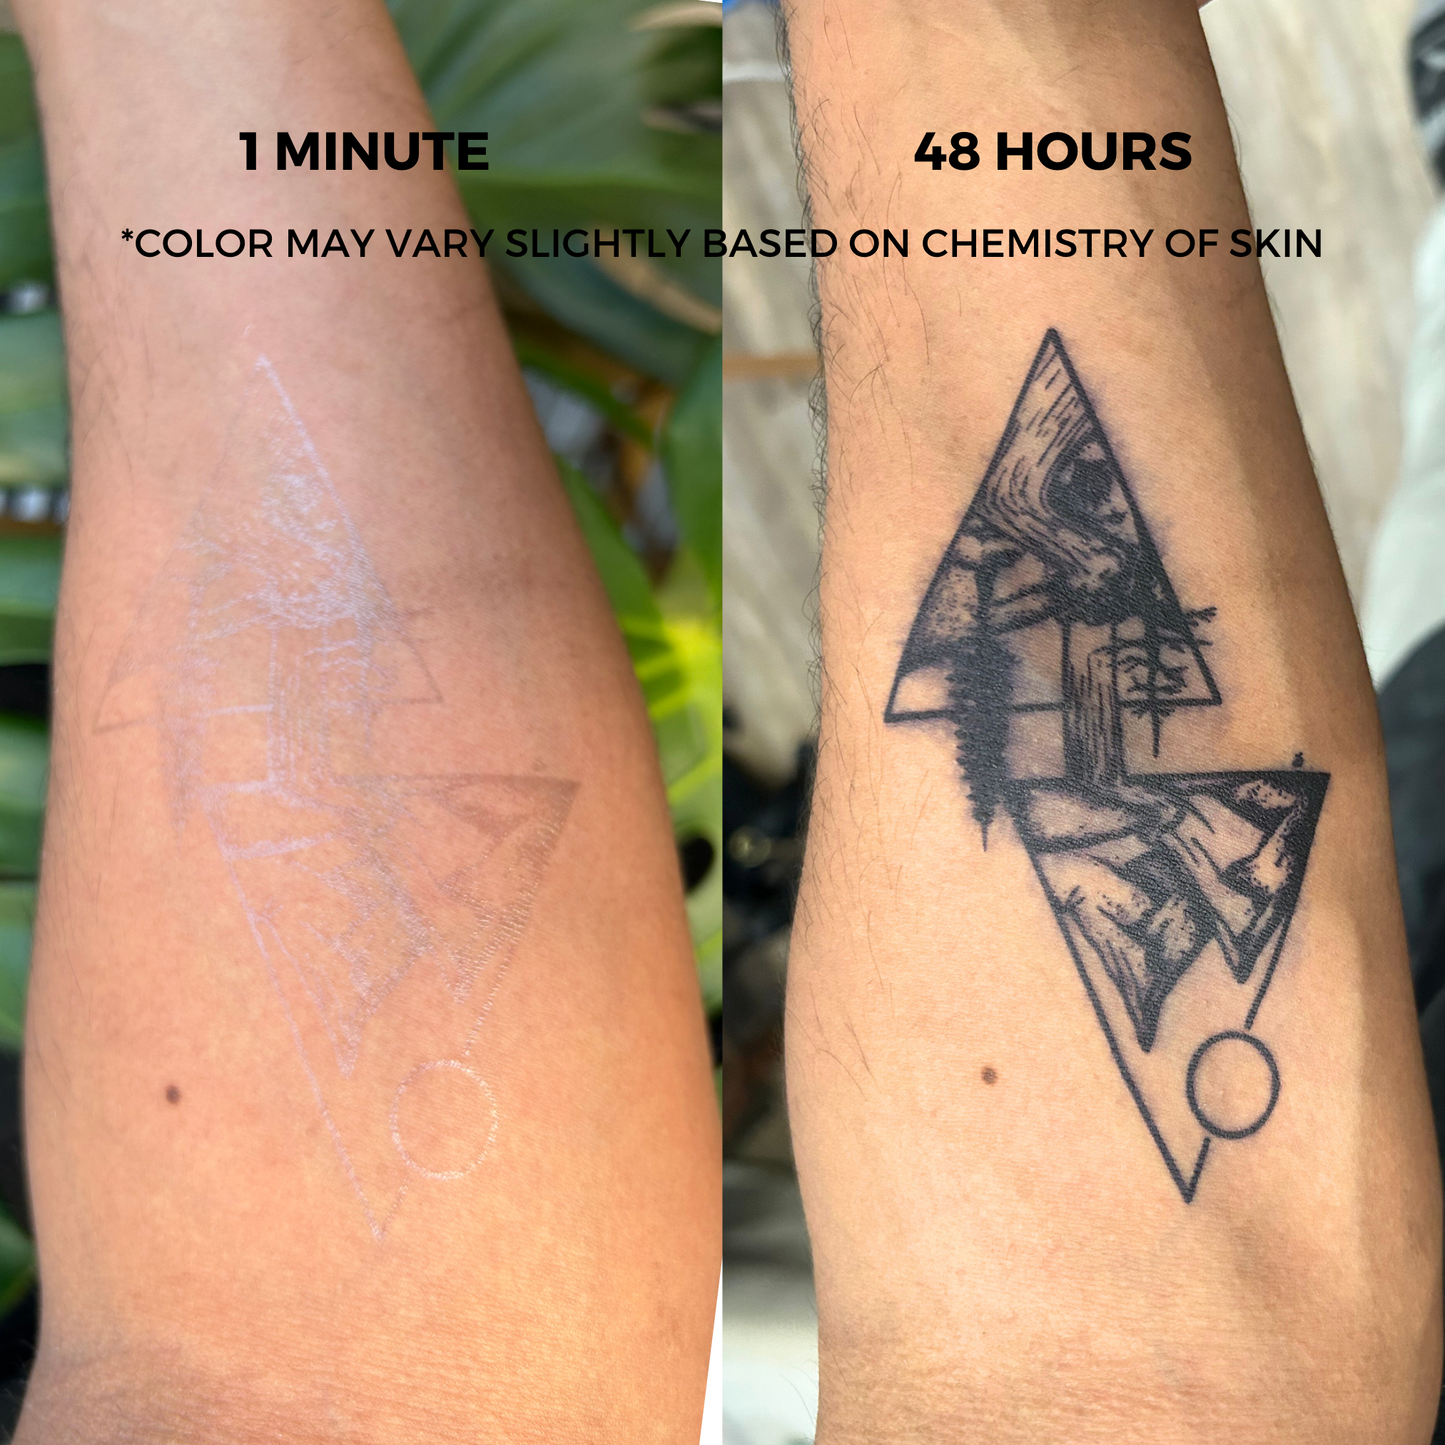 Butterfly Tattoo | 2 Week Temporary Tattoo | Semi Permanent Tattoo | Plant Based Vegan Tattoo | Butterflies Tattoo | Insect Tattoo | Inspirational Tattoo | Gift Idea | Boho Tattoo | Bohemian Tattoo | Nature Tattoo | Femimine Tattoo